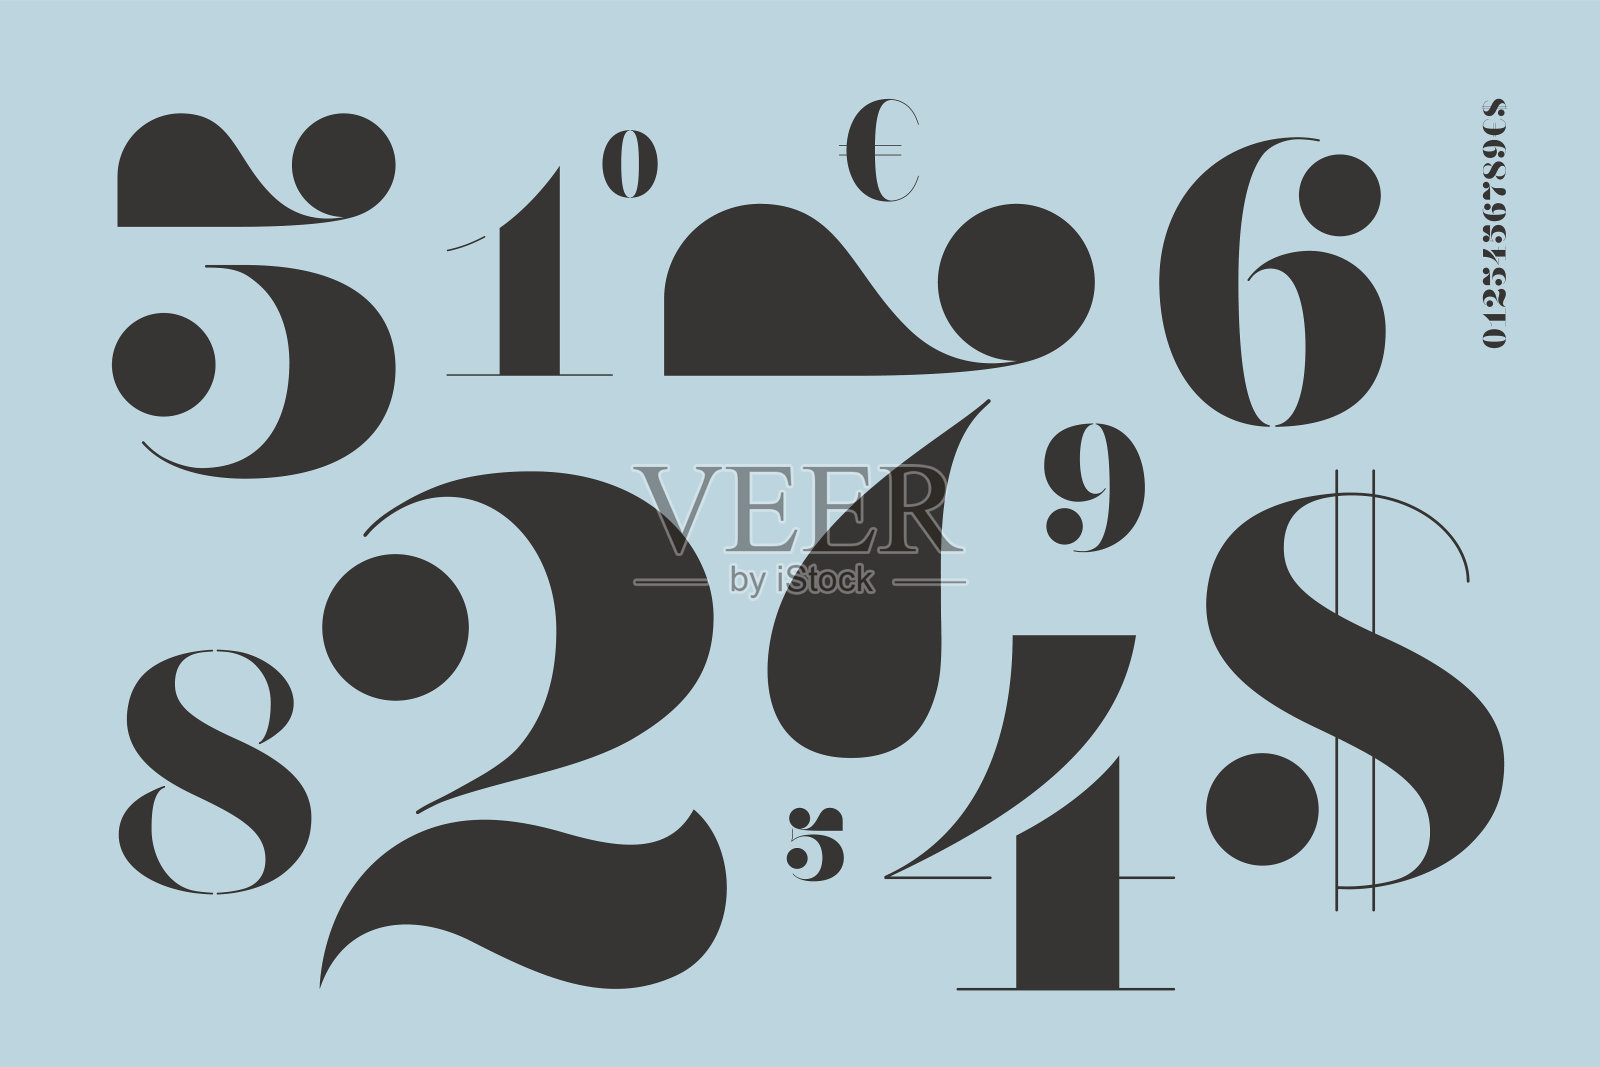 数字字体在古典法语didot风格设计元素图片